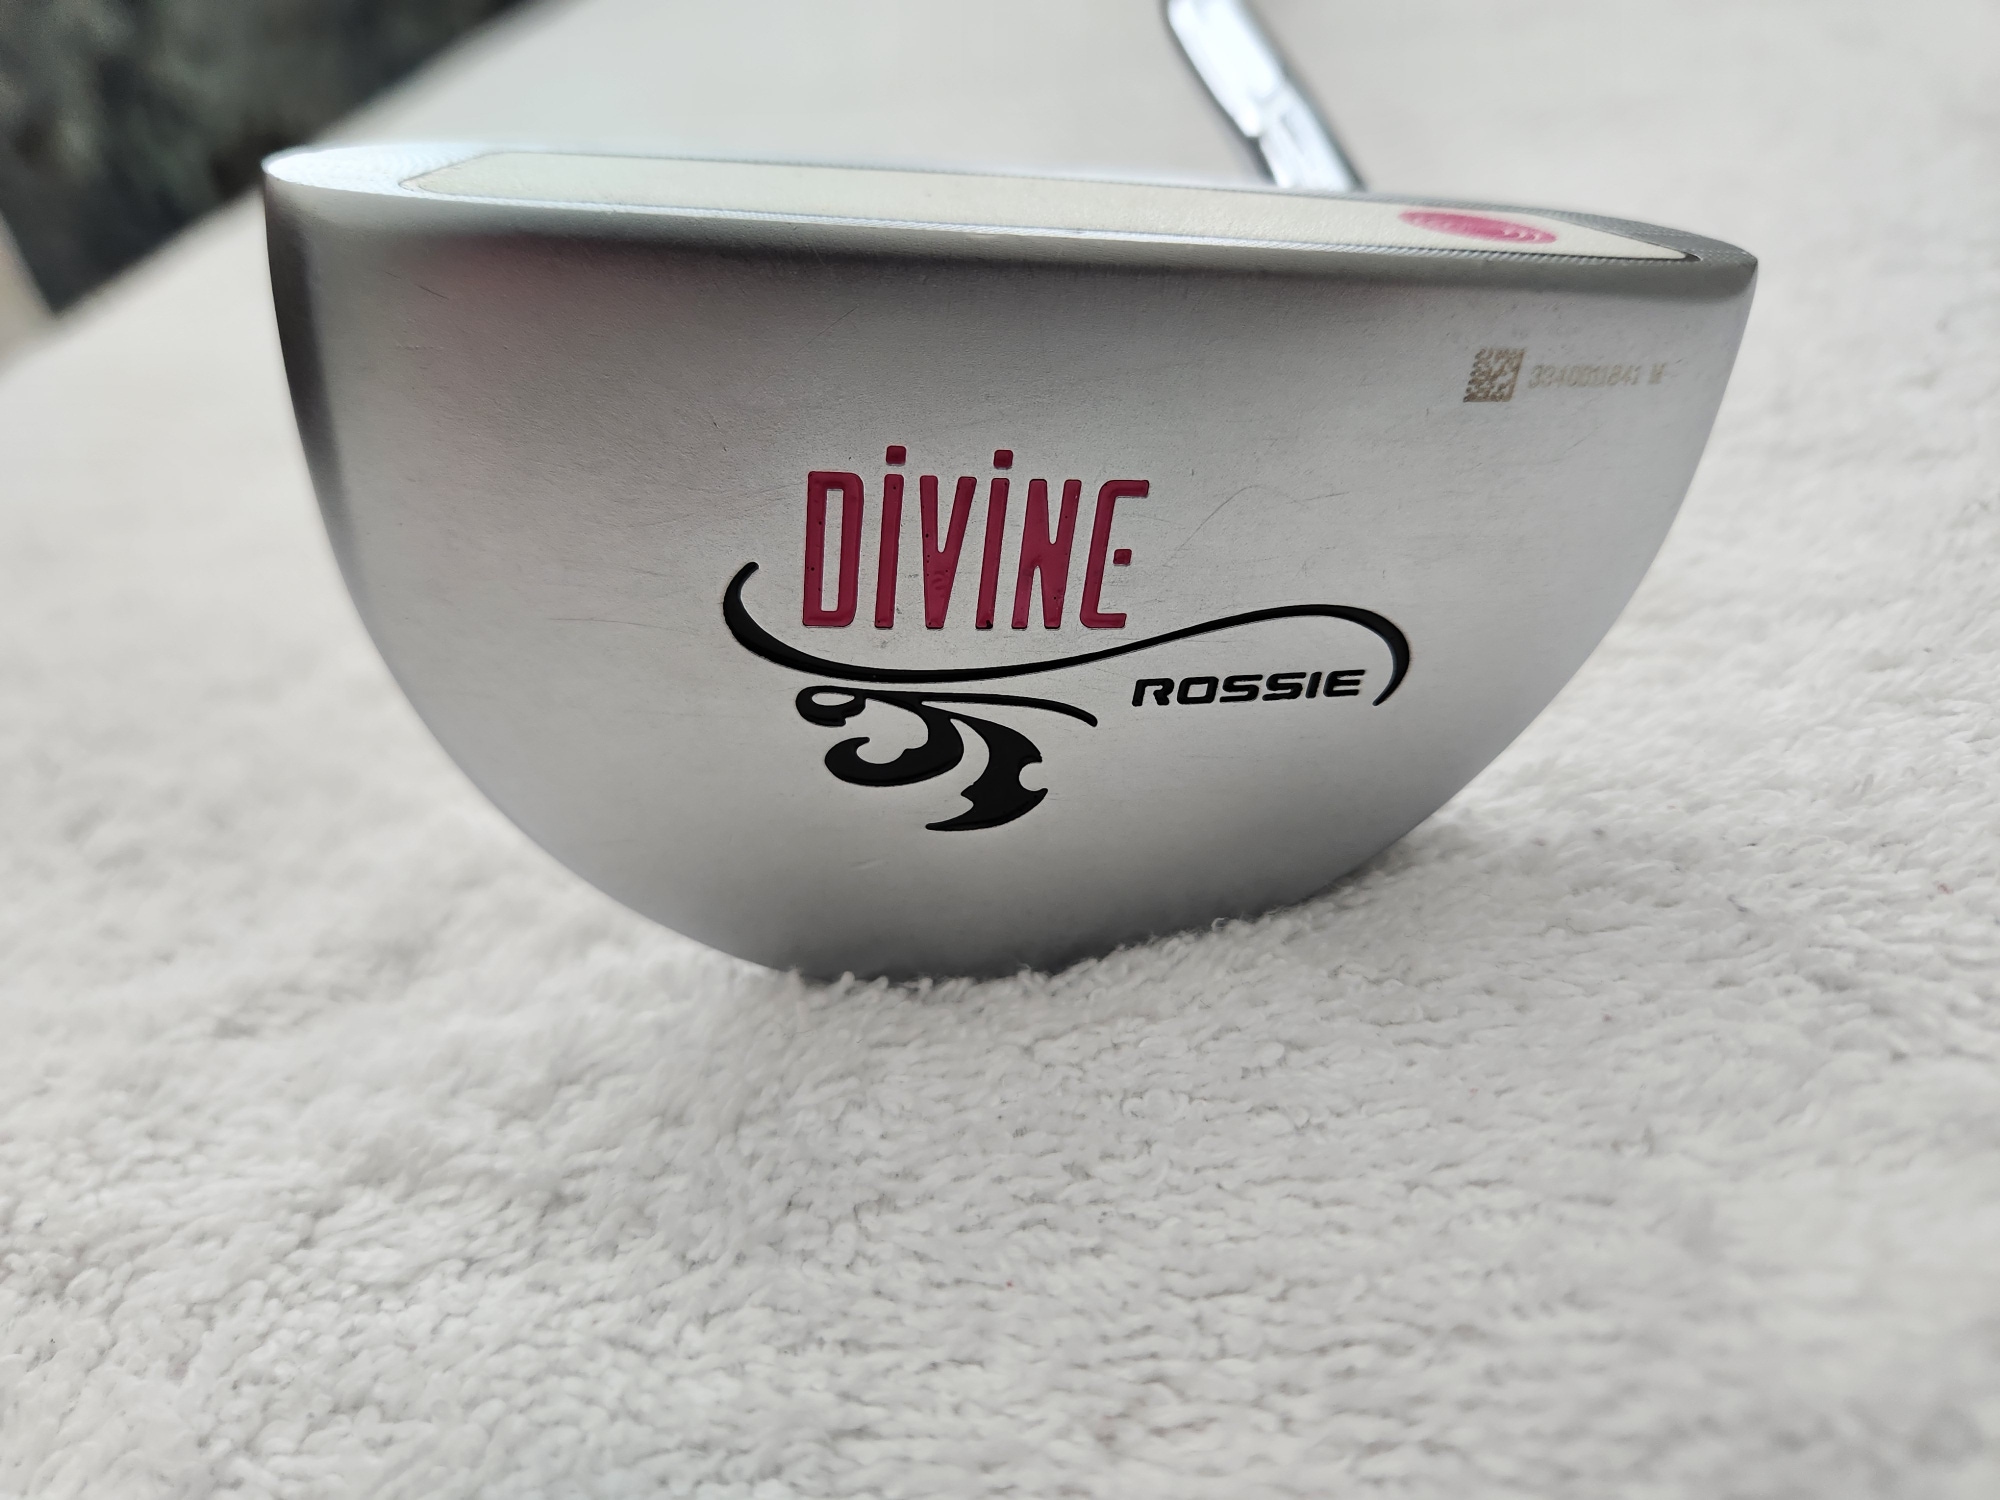 Women's Odyssey Divine Line Rossie Putter RH; Odyssey Steel Shaft; New Grip